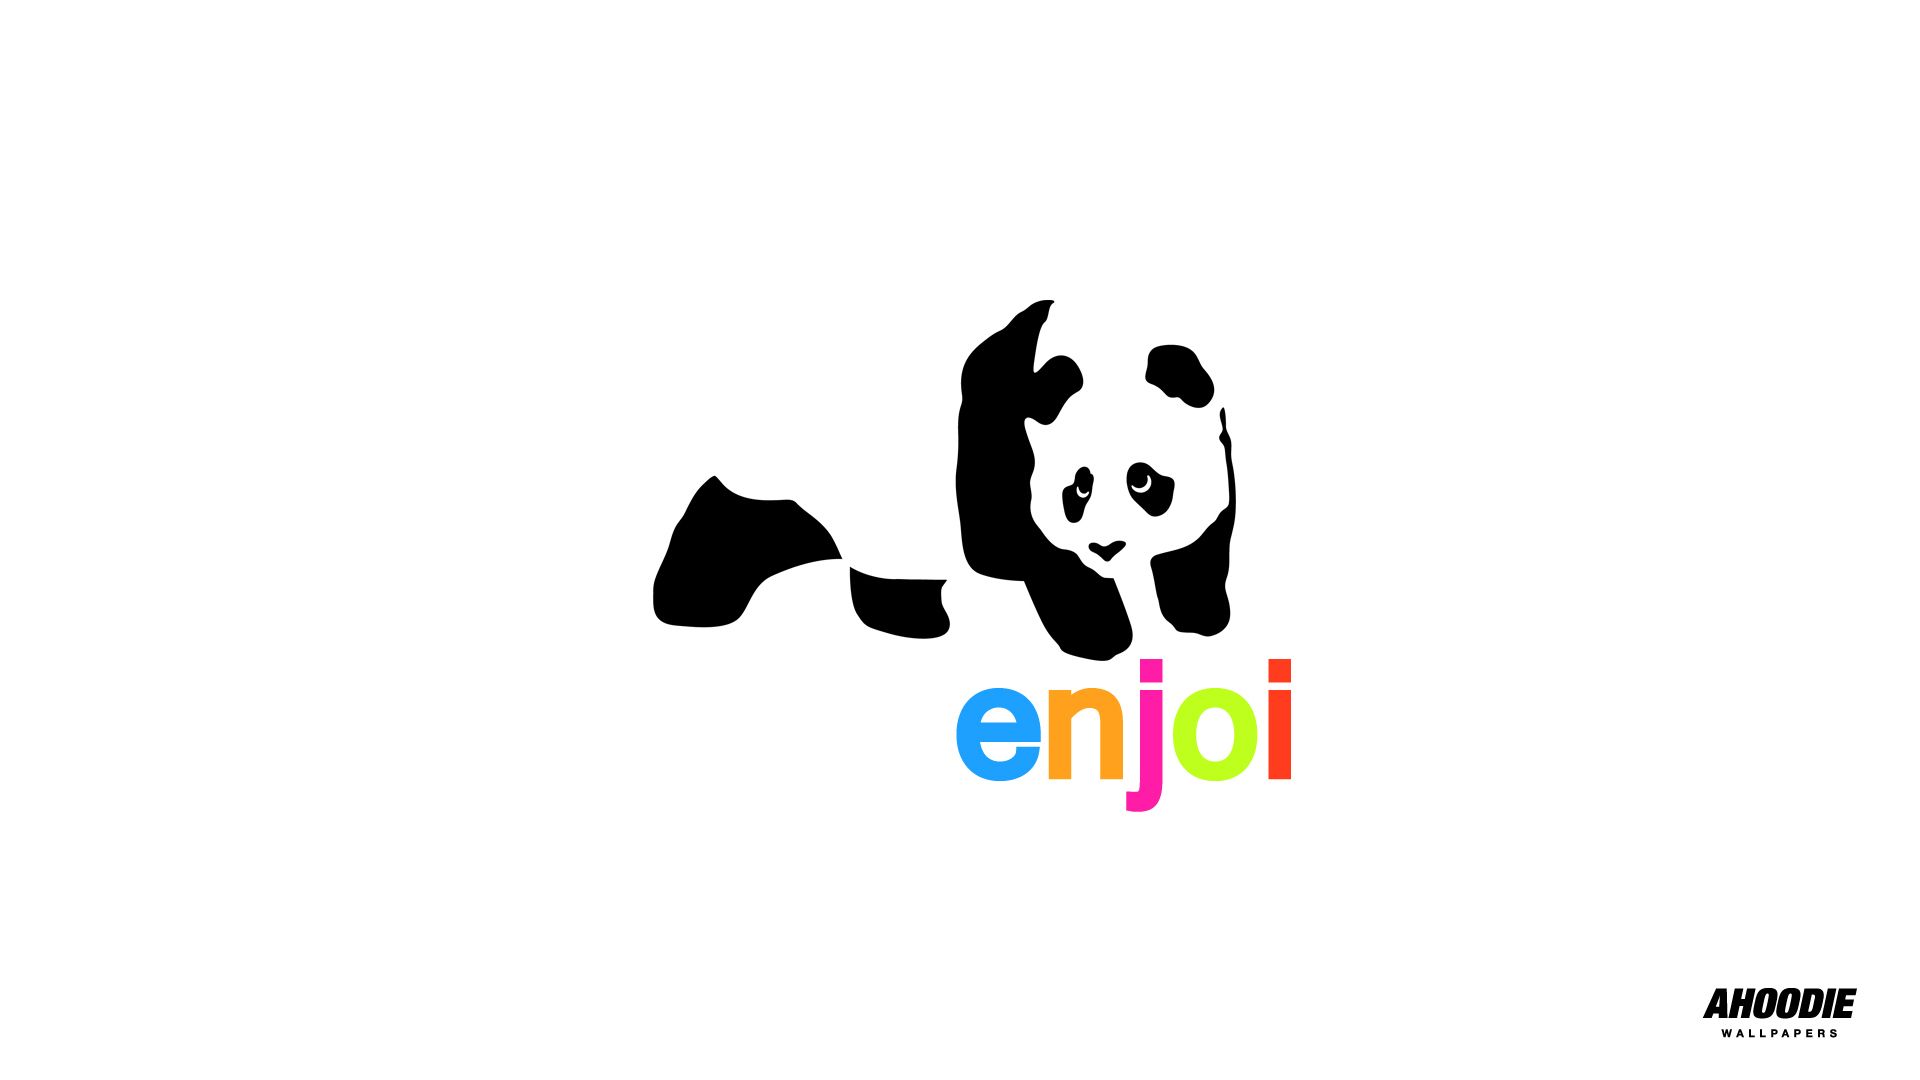 Enjoi Panda Logo Wallpaper Skateboard Industry